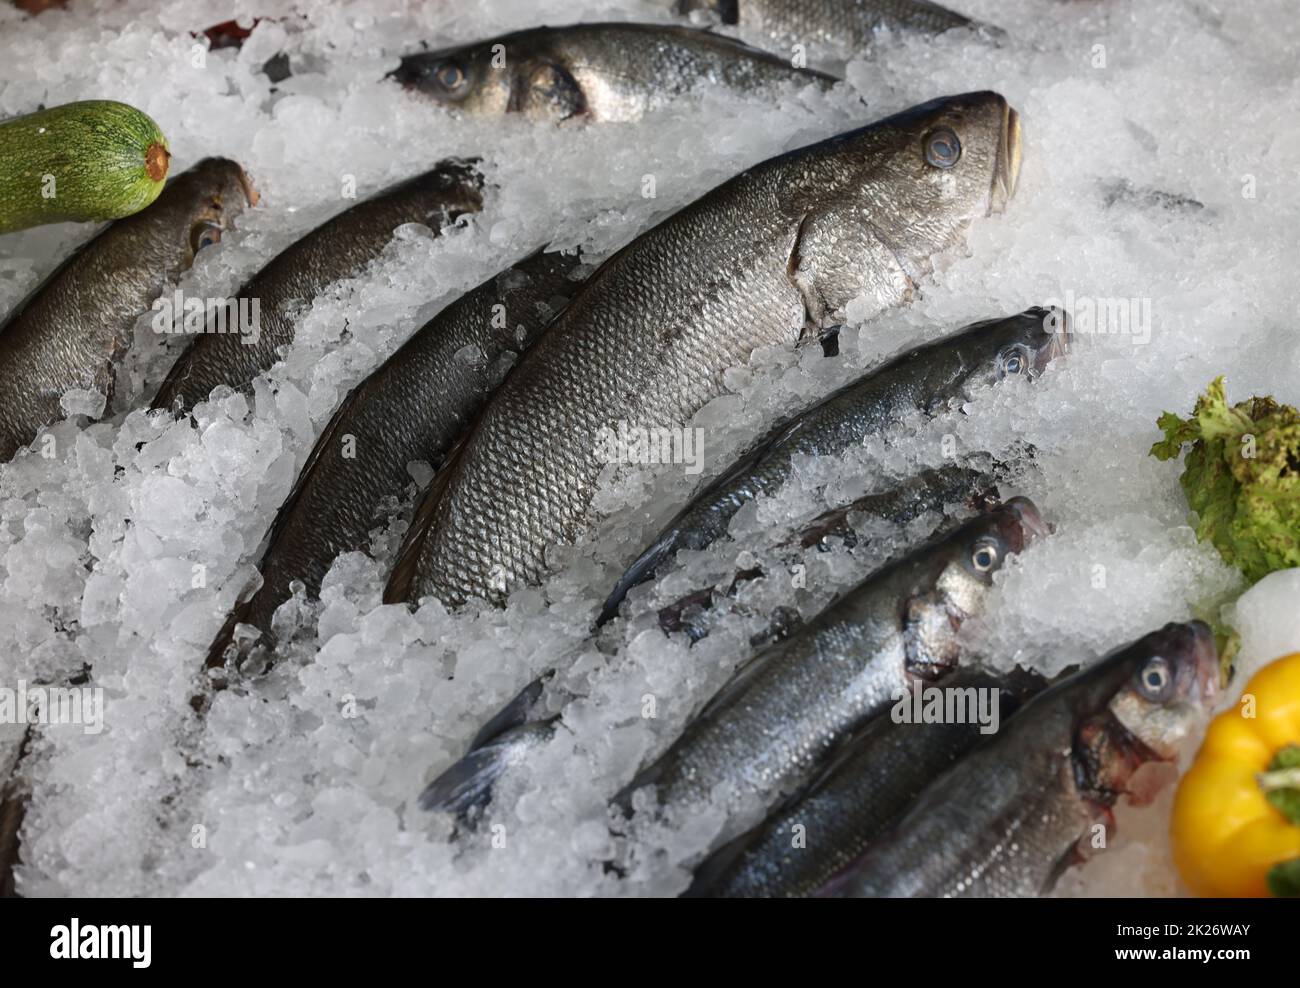 Fruits de mer frais et poissons se trouvant sur la glace dans la vitrine. Rethymno sur l'île de Crète Banque D'Images